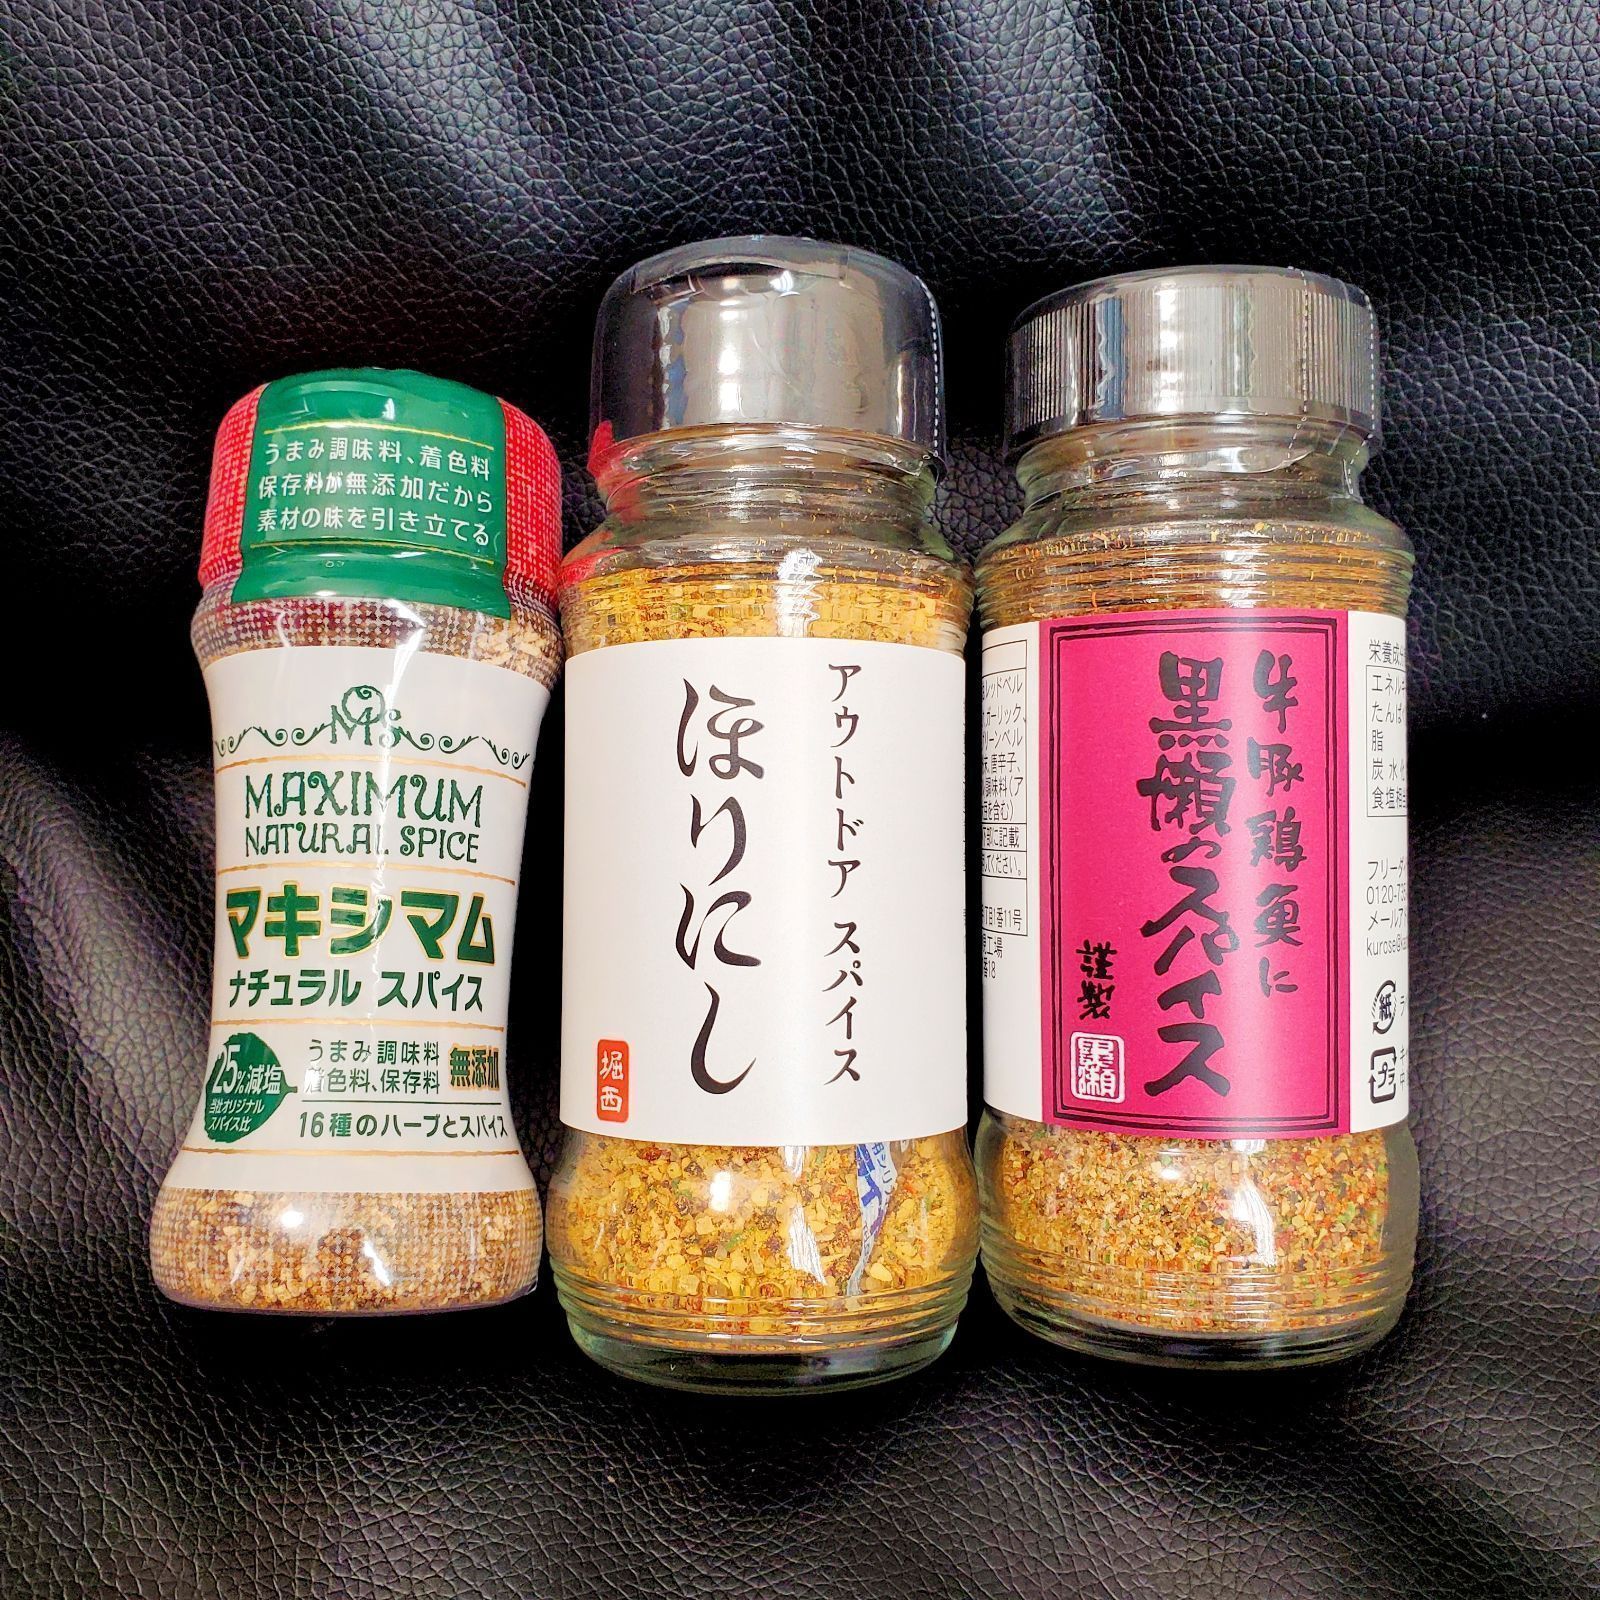 スパイスの保存方法と賞味期限 - 日本安全食料料理協会